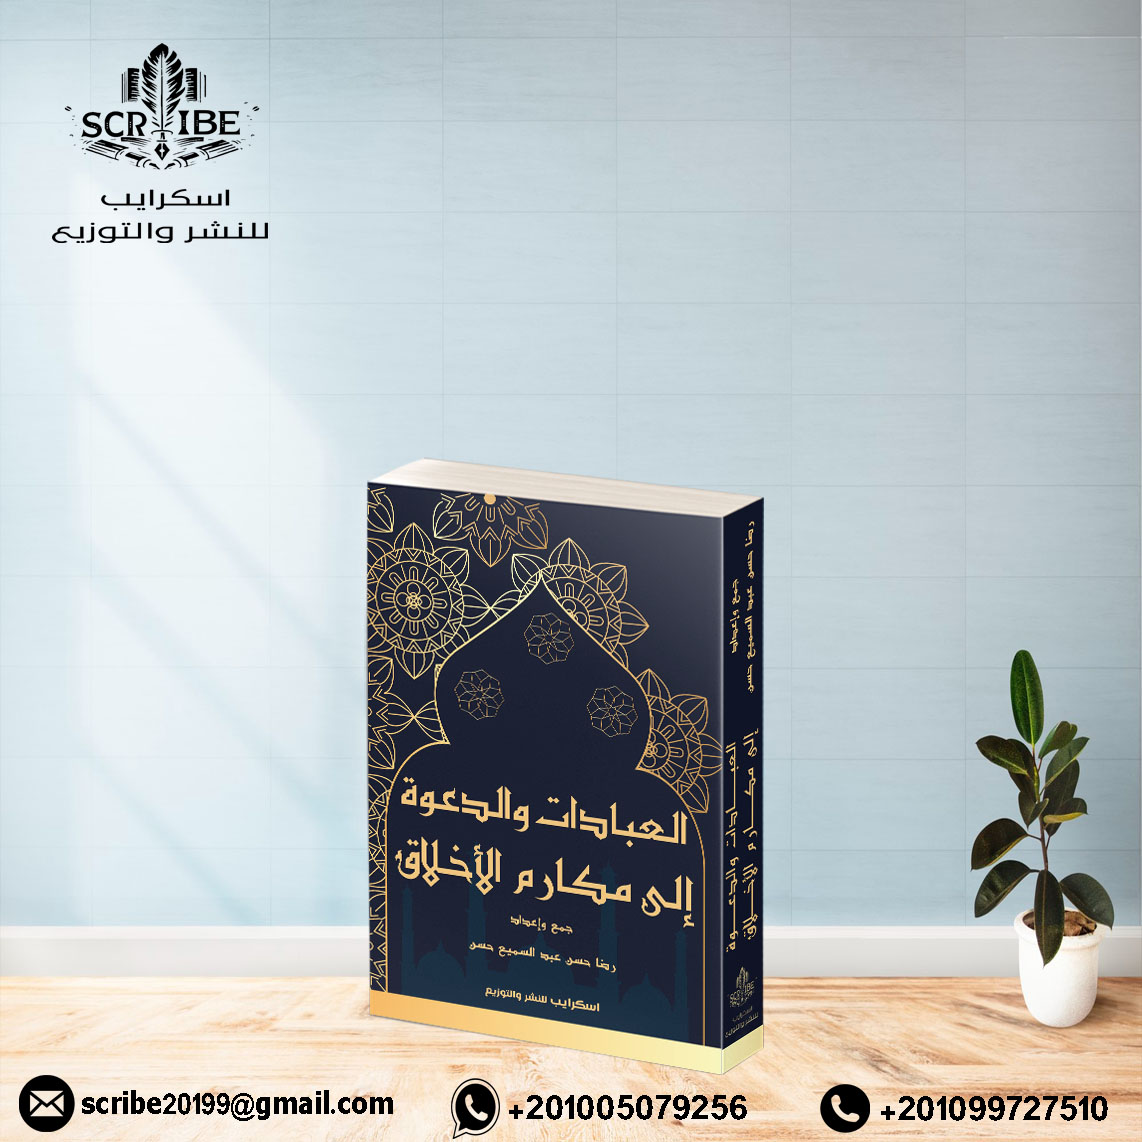 كتاب “العبادات والدعوة إلى مكارم الأخلاق”، للكاتب: رضا عبد السميع